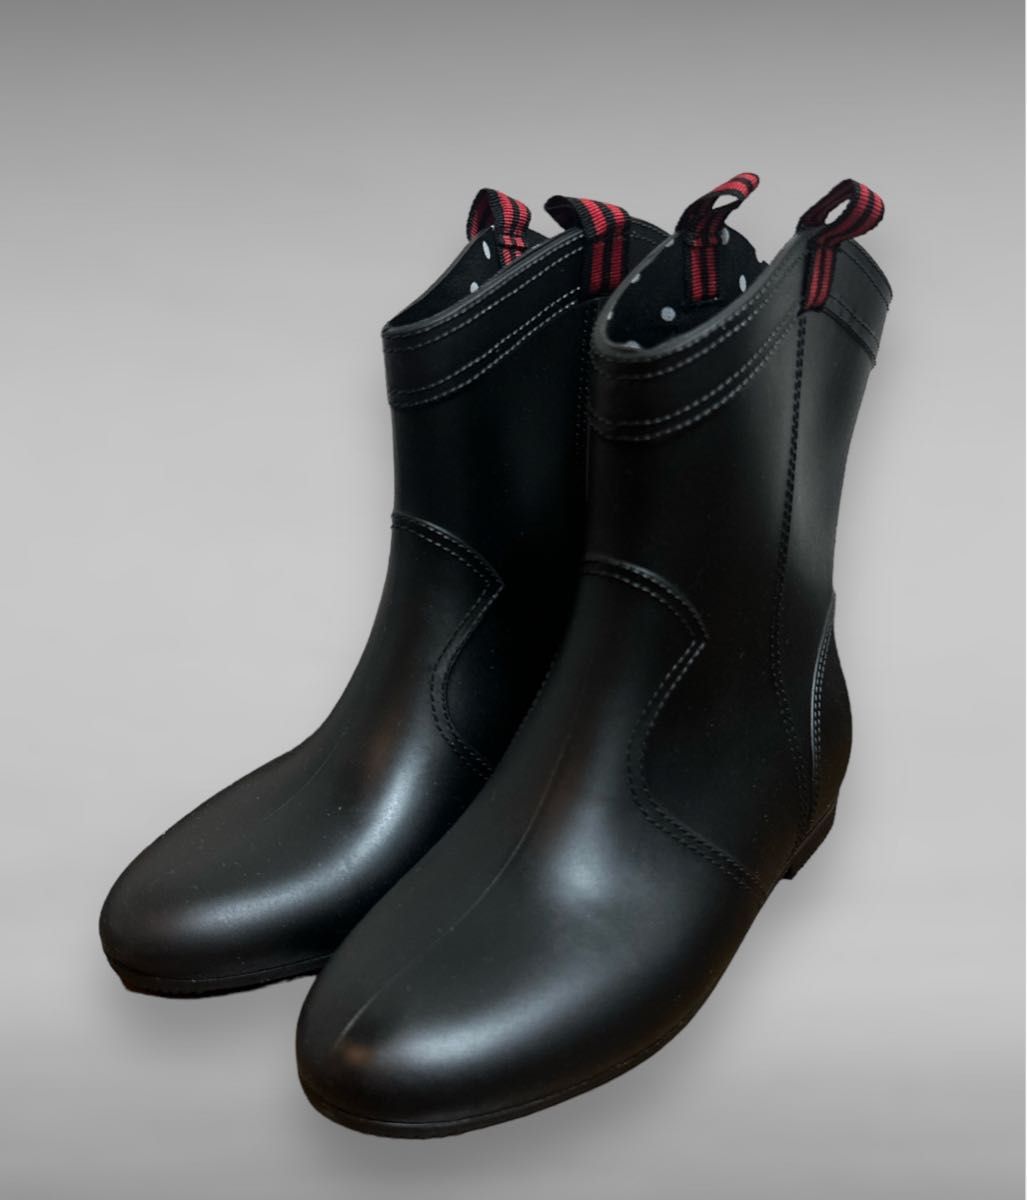 新品未使用品  Mサイズ レインブーツ 雨具 長靴  ブラック  ブーツ 雨靴 梅雨 撥水 レインシューズ 通勤通学 アウトドア 